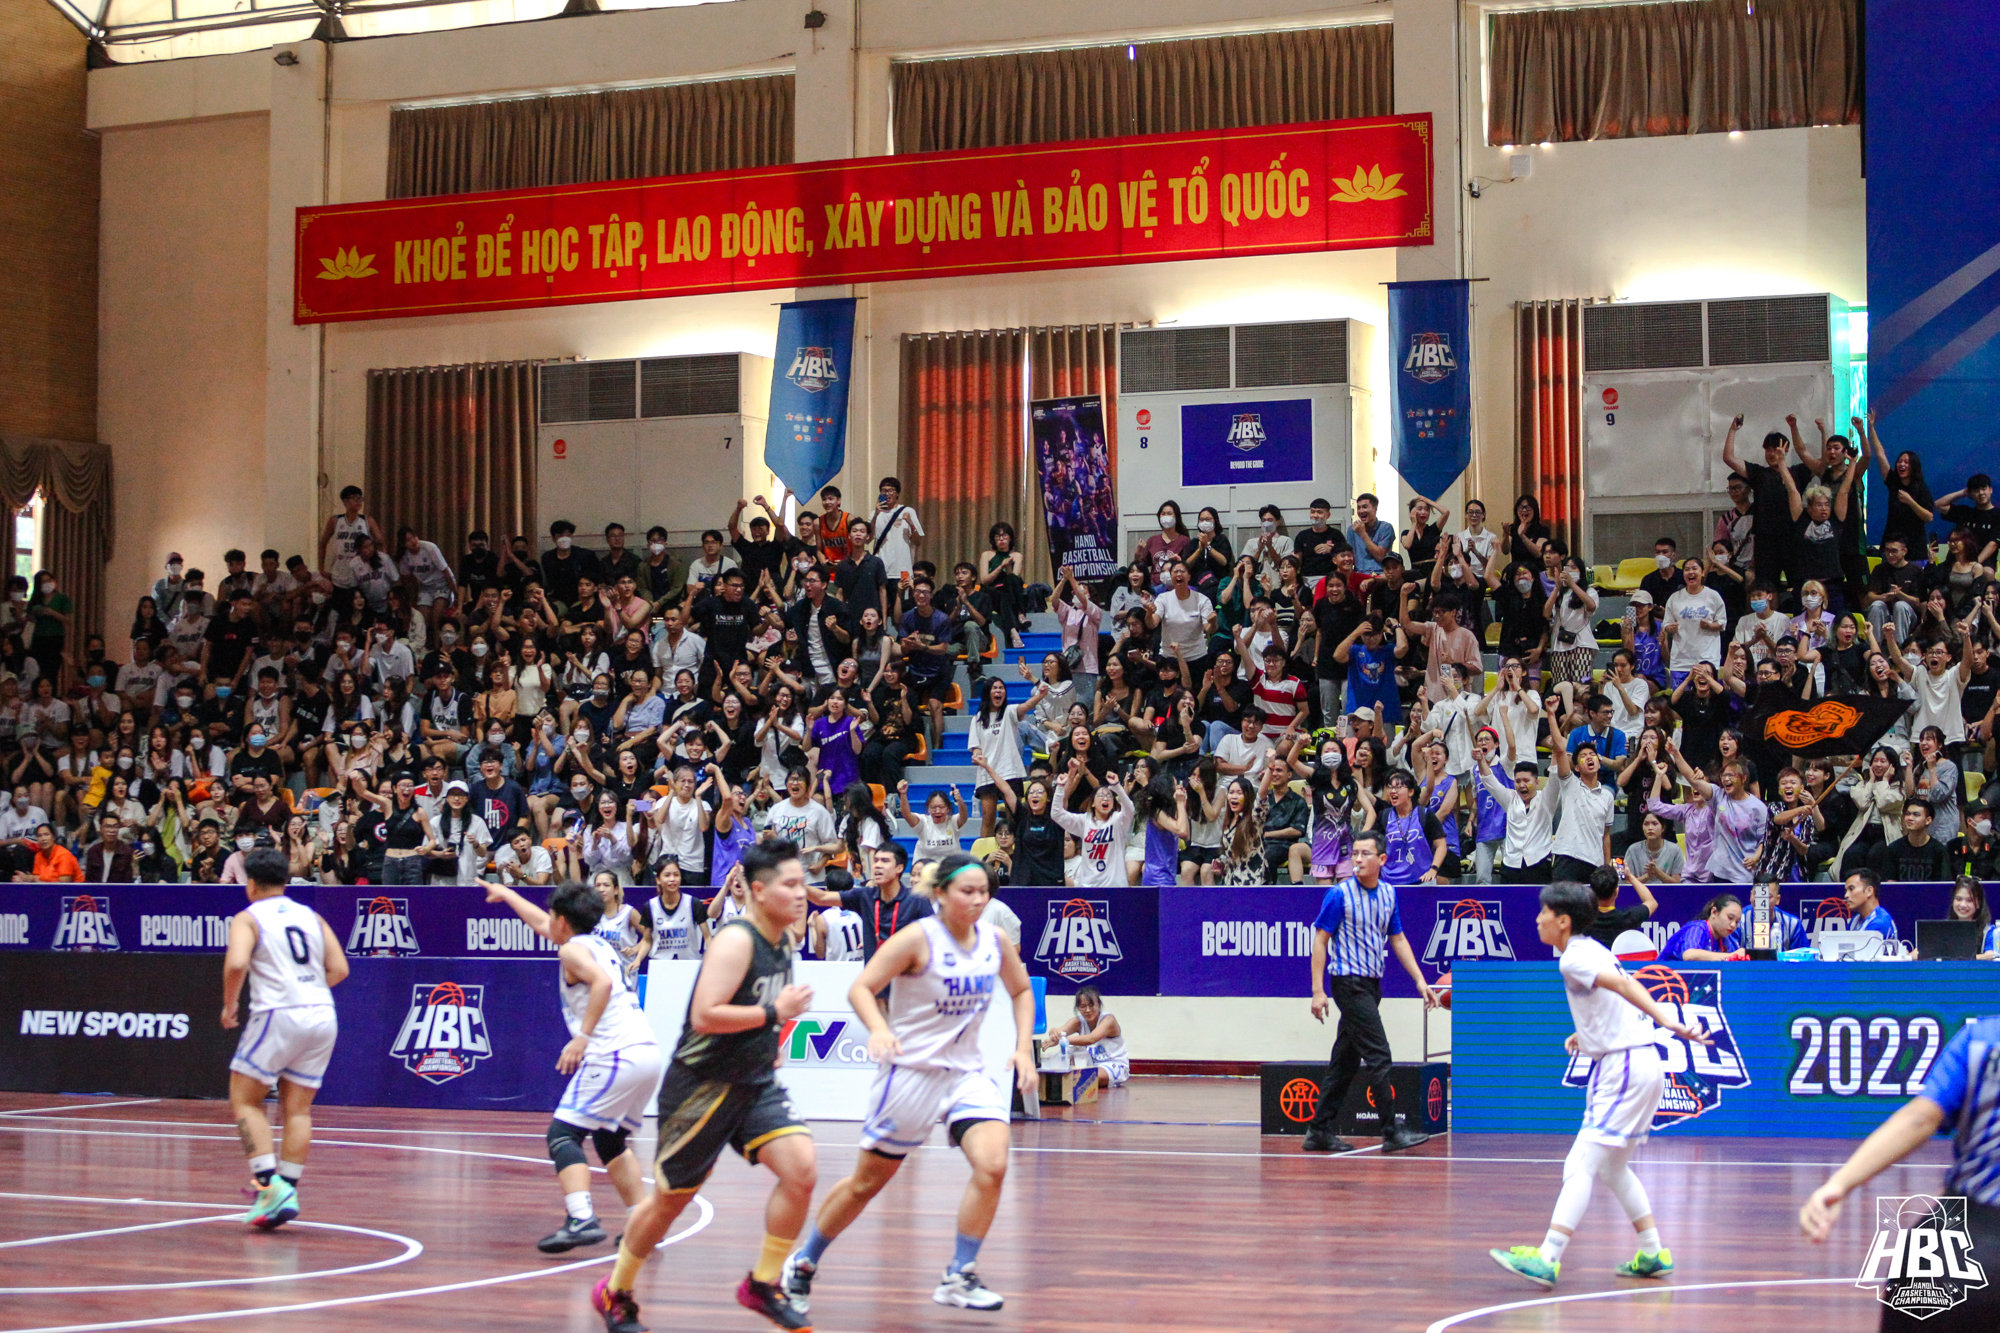 Người hâm mộ bóng rổ Hà Nội bất ngờ trước sự xuất hiện của Chi Pu tại giải đấu HBC 2022 - Ảnh 8.